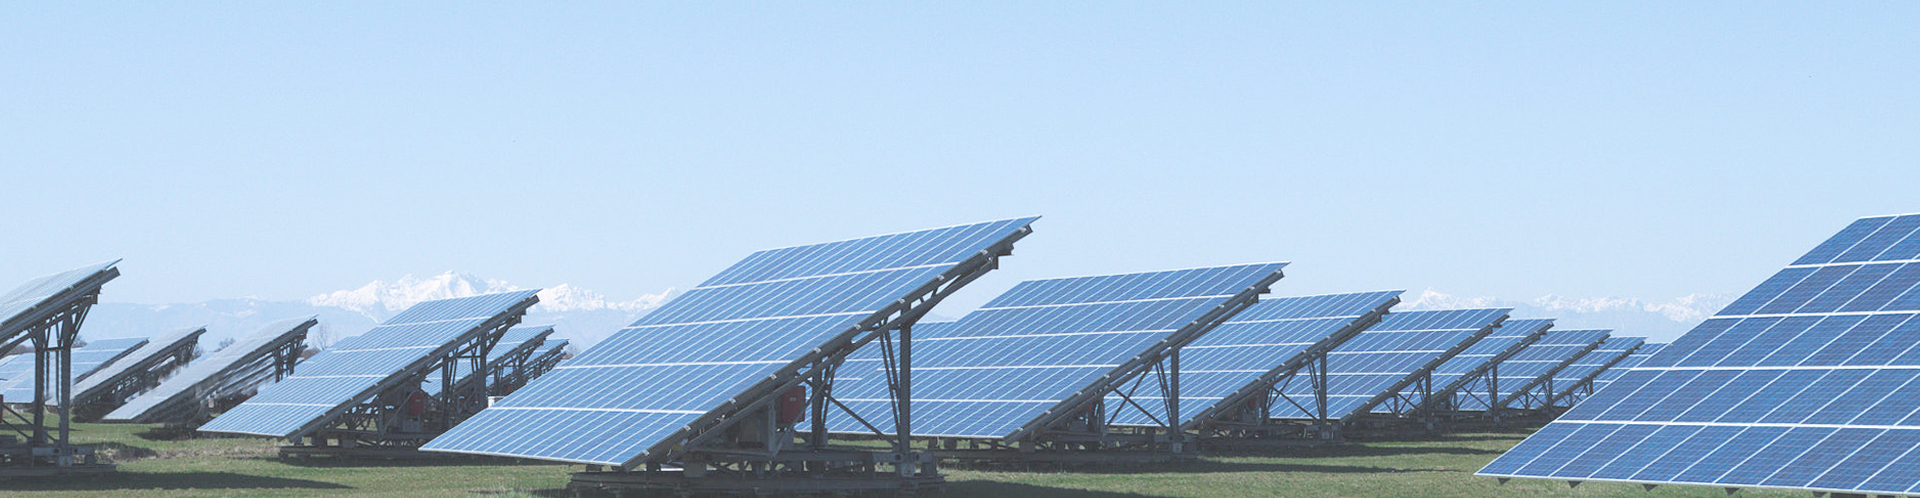 吉安太阳能光伏发电工程告诉你家用太阳能发电系统需要多少钱